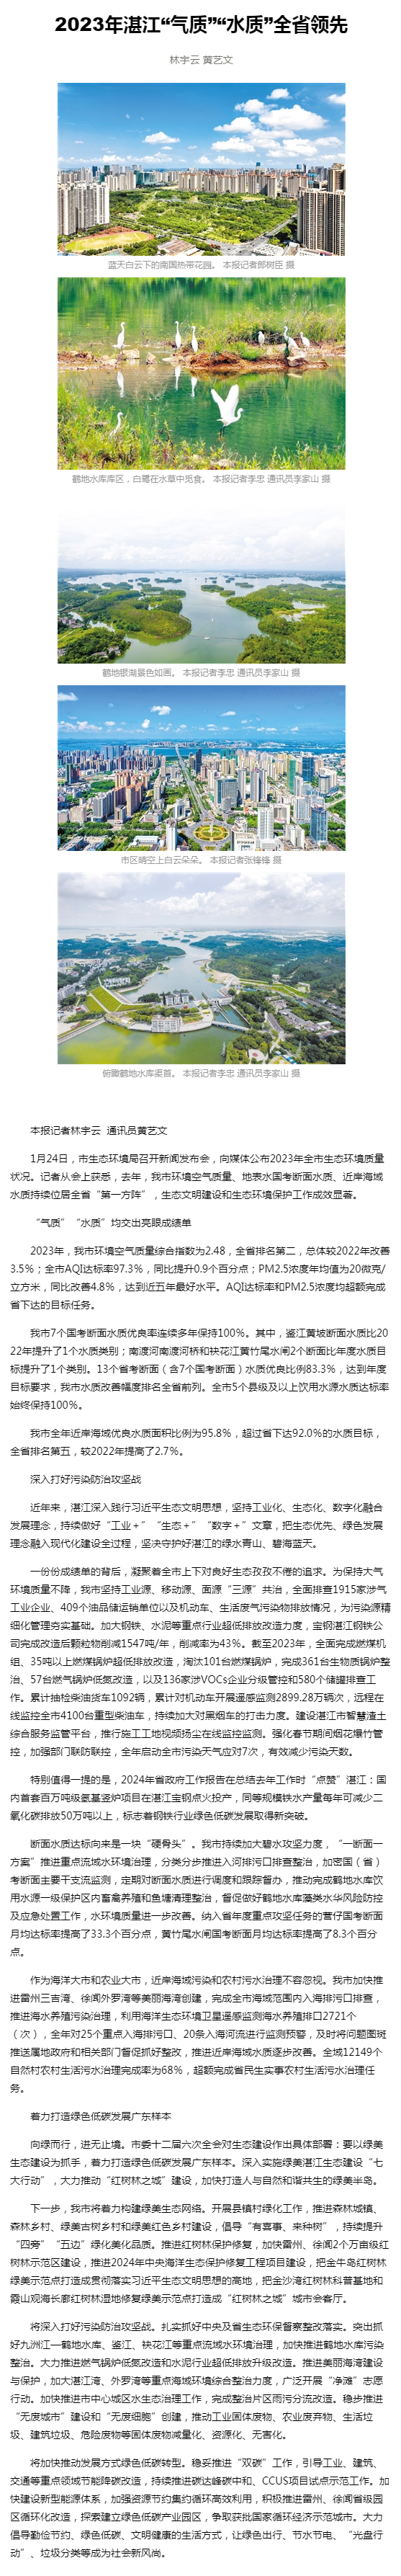 湛江日报数字报-2023年湛江“气质”“水质”全省领先.png